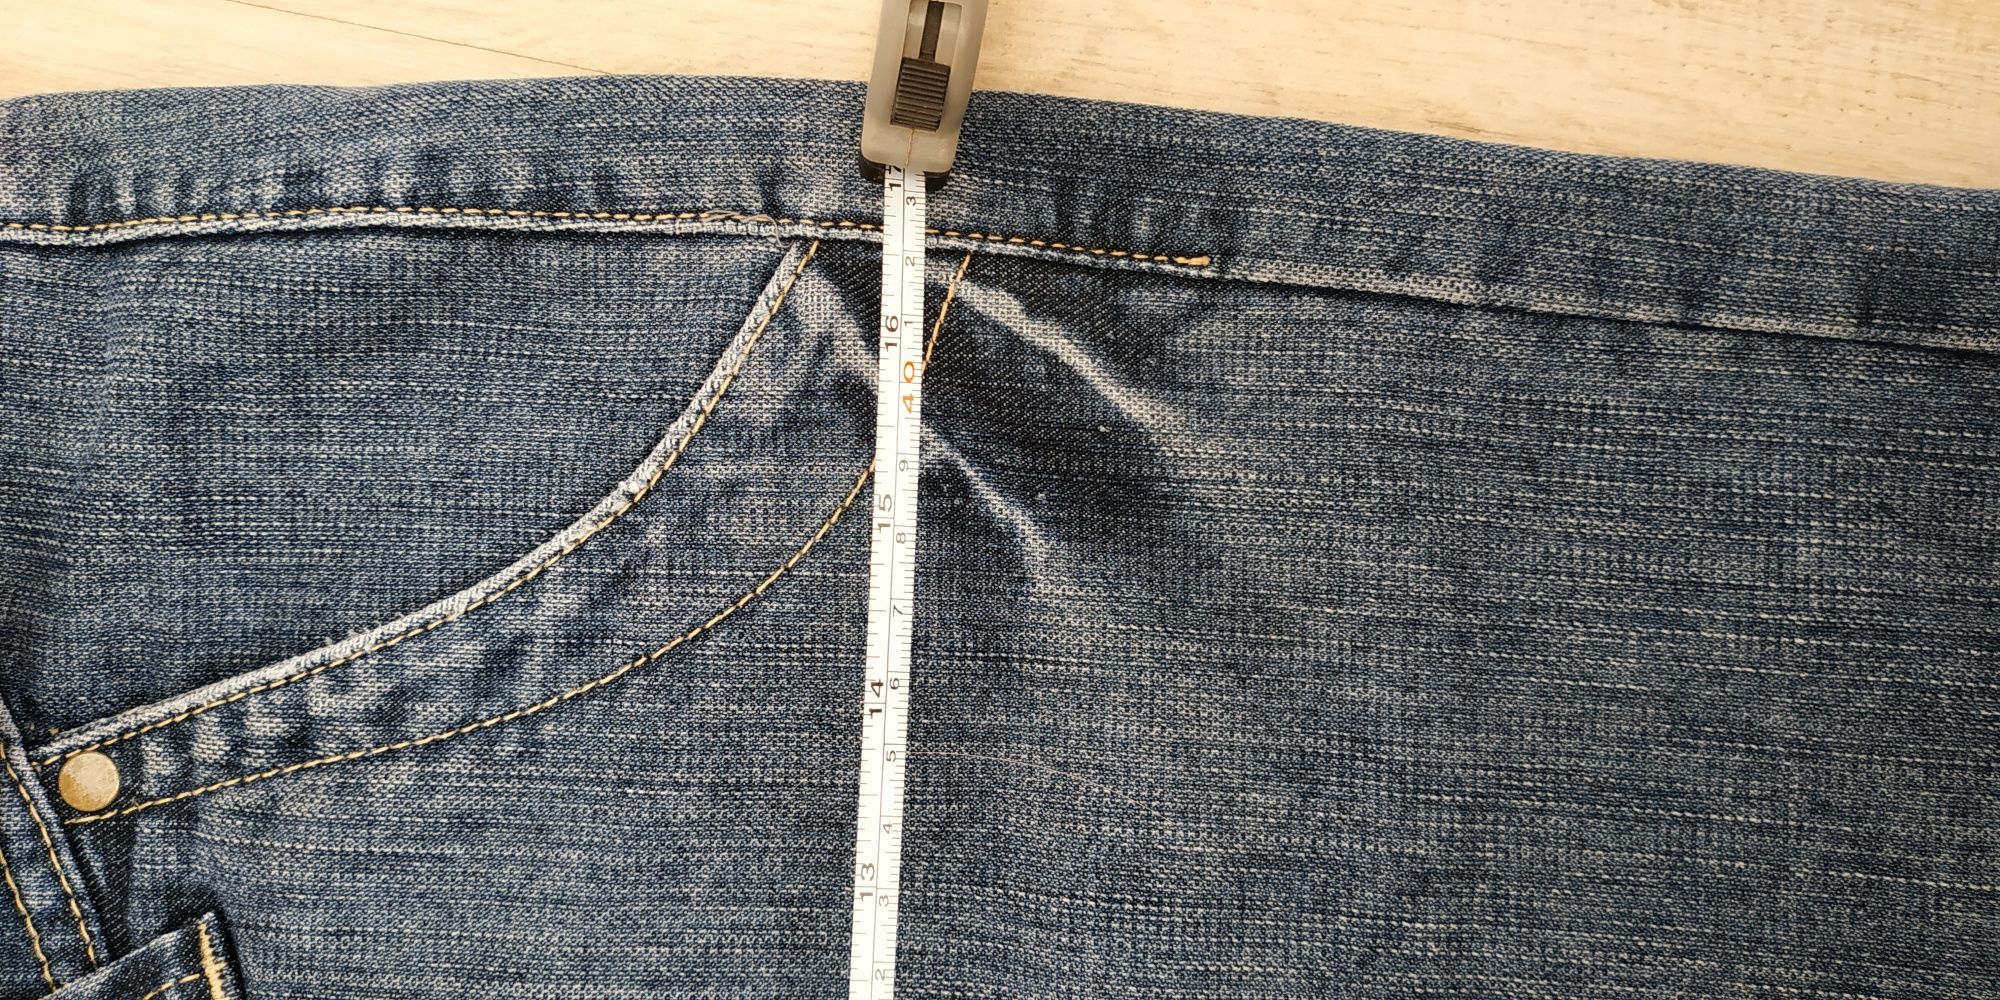 Юбка джинсовая для беременных